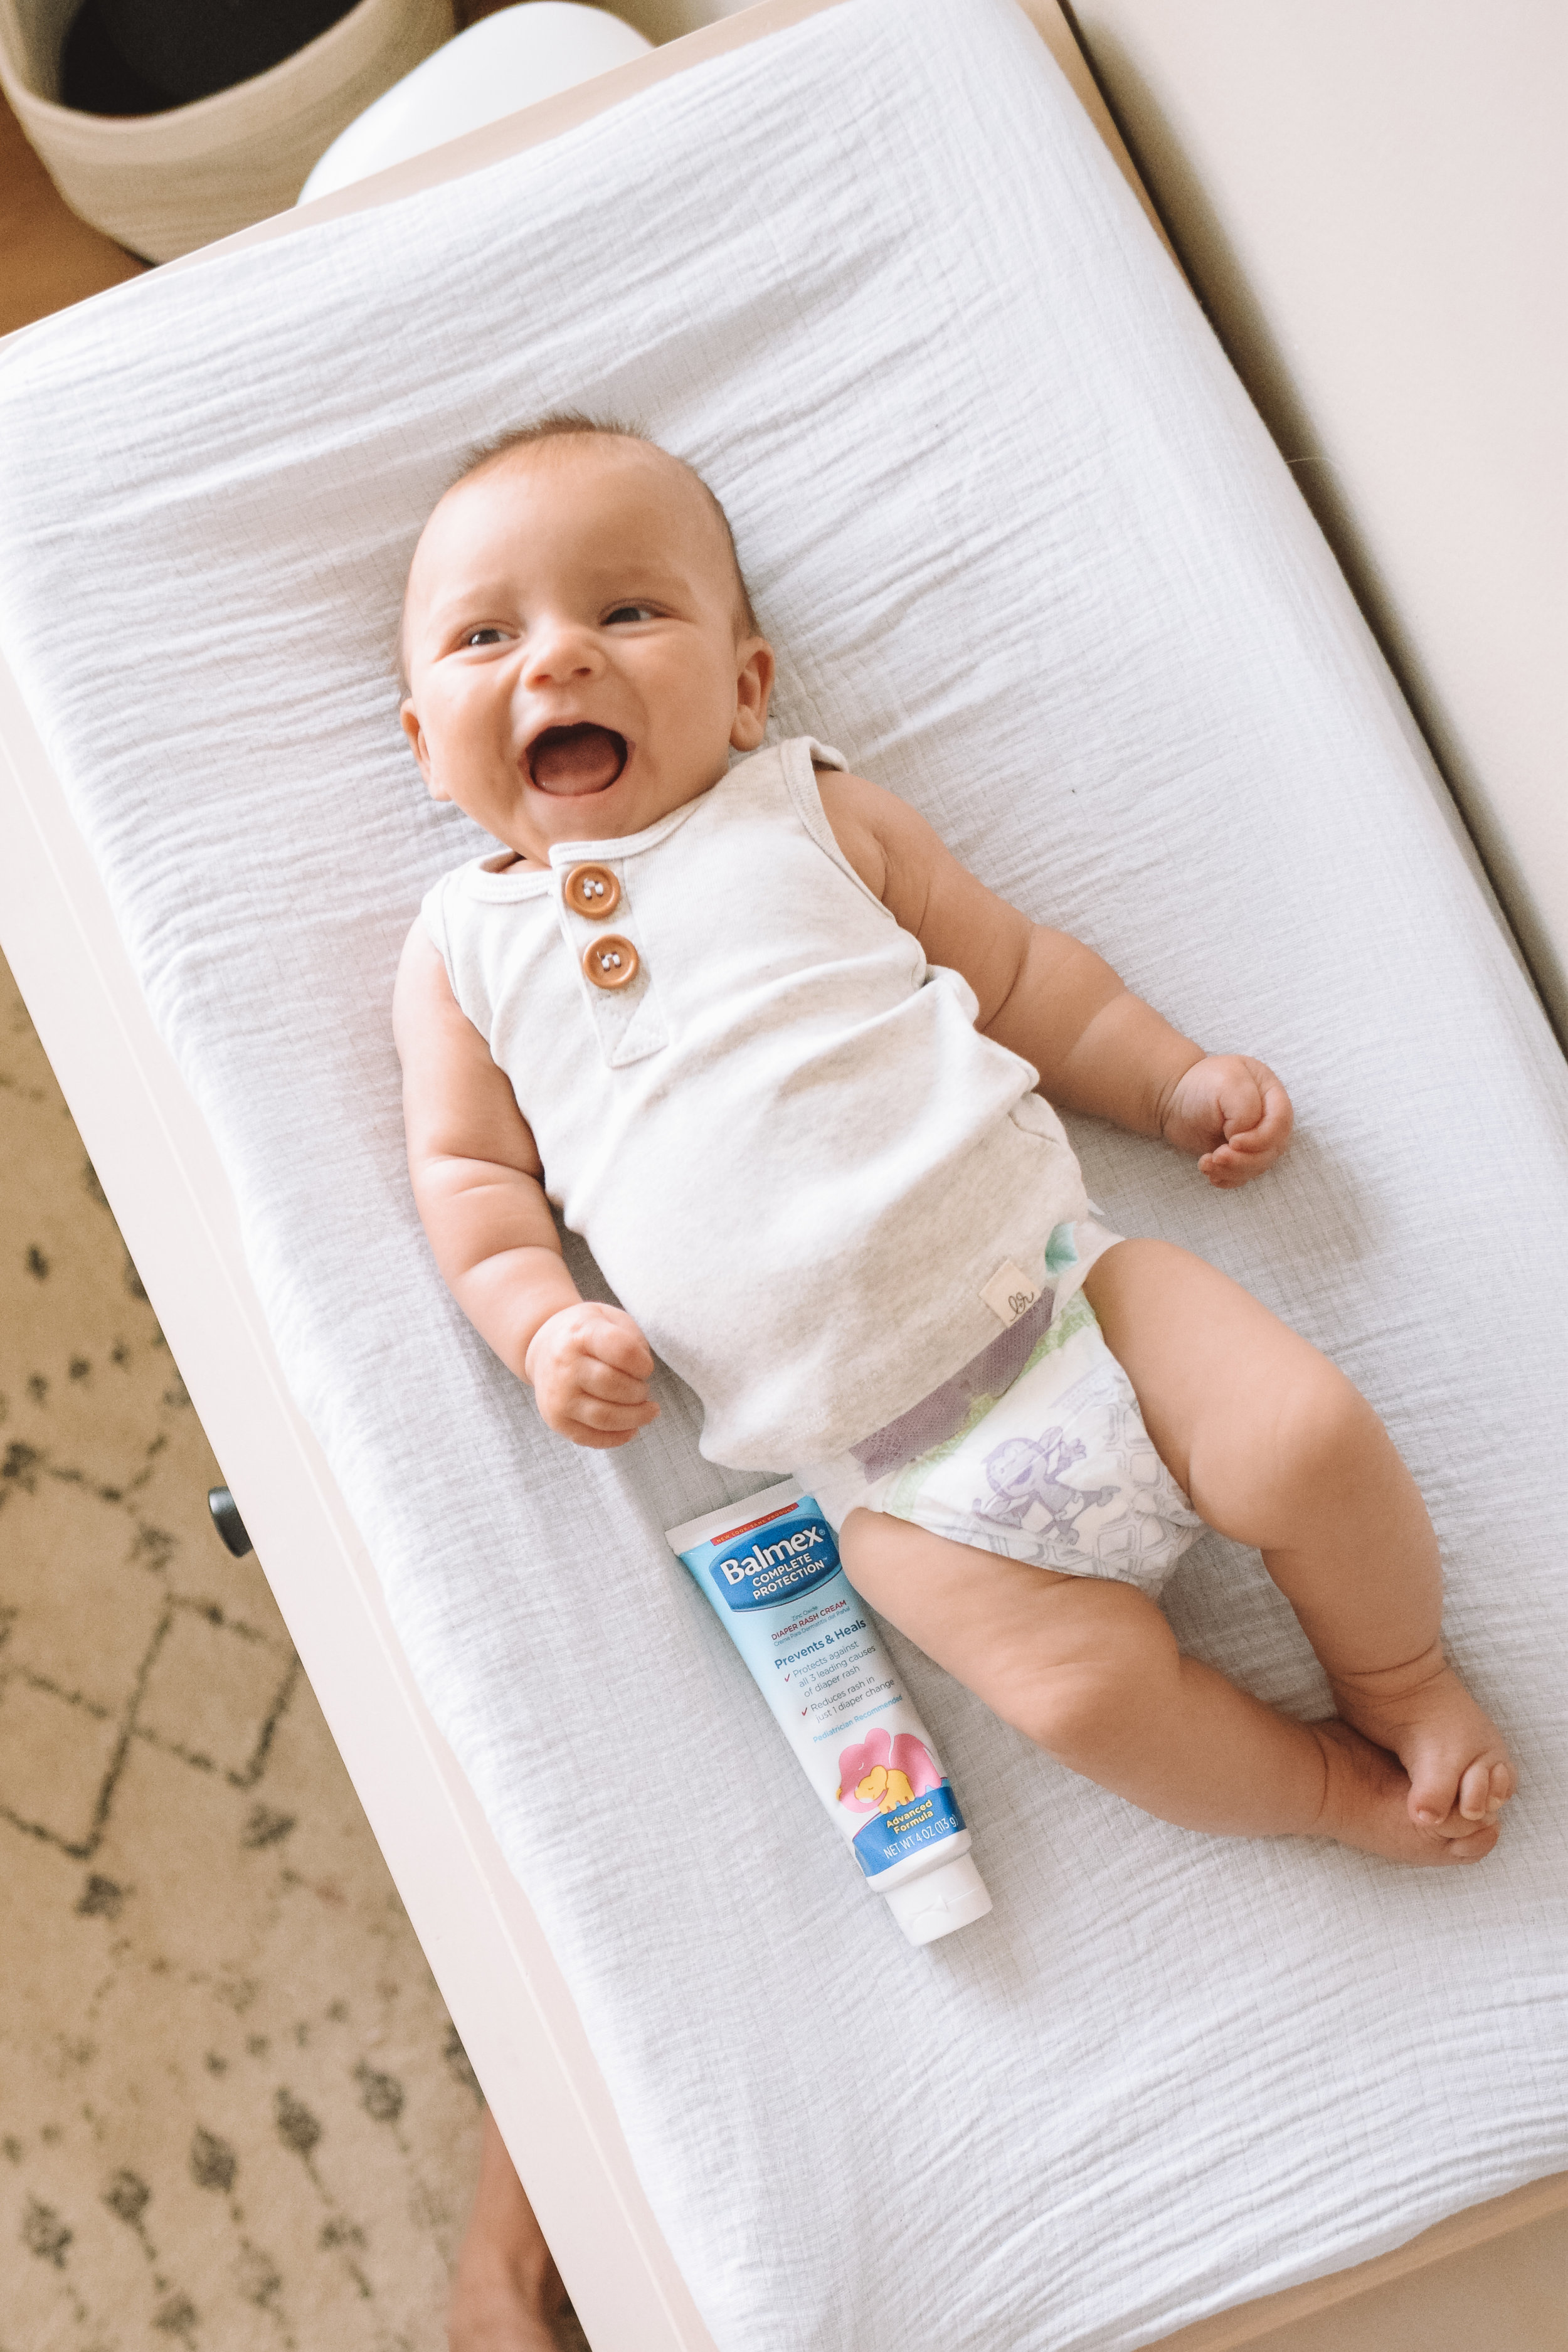 3 Tips For Preventing Diaper Rashes The Overwhelmed Mommy